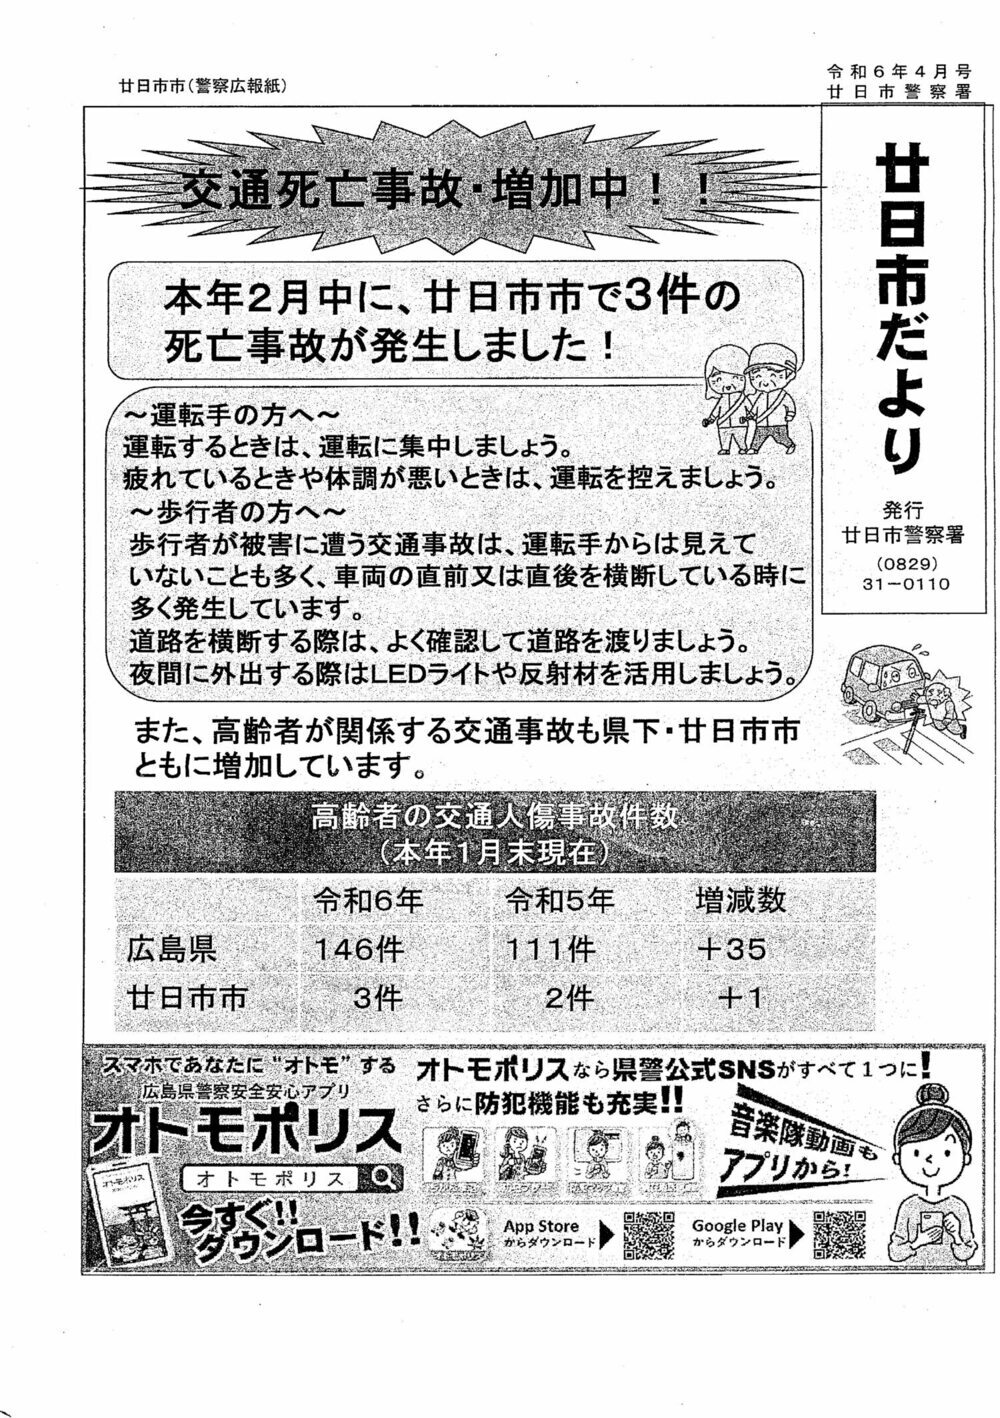 Boletim informativo de Hatsukaichi publicado pela Delegacia de Polícia de Hatsukaichi, edição de outubro de 6